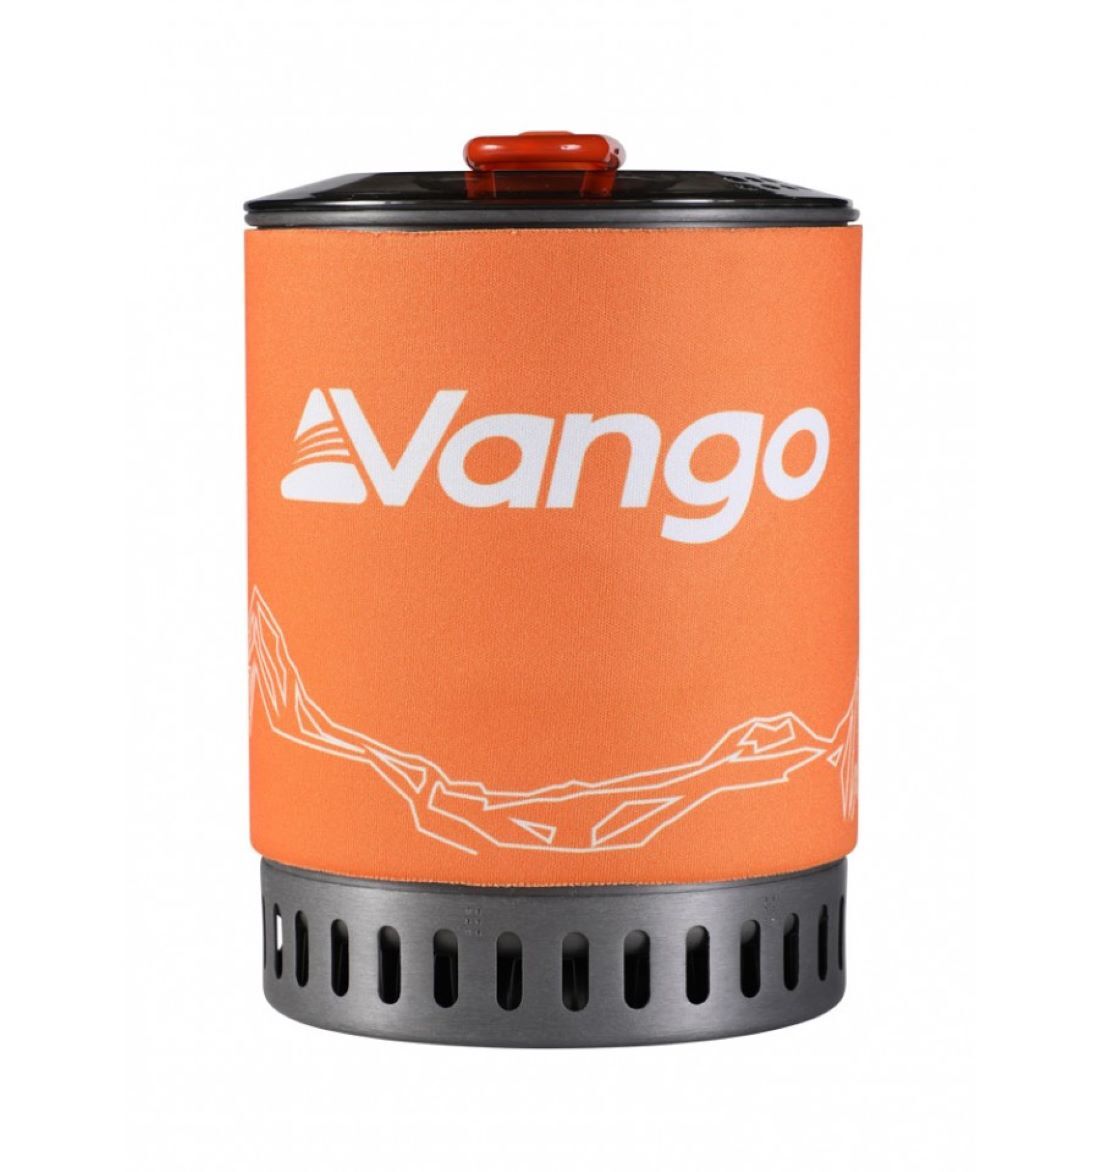 Vango Ultralight Heat Exchanger Cook Kit - Kochset